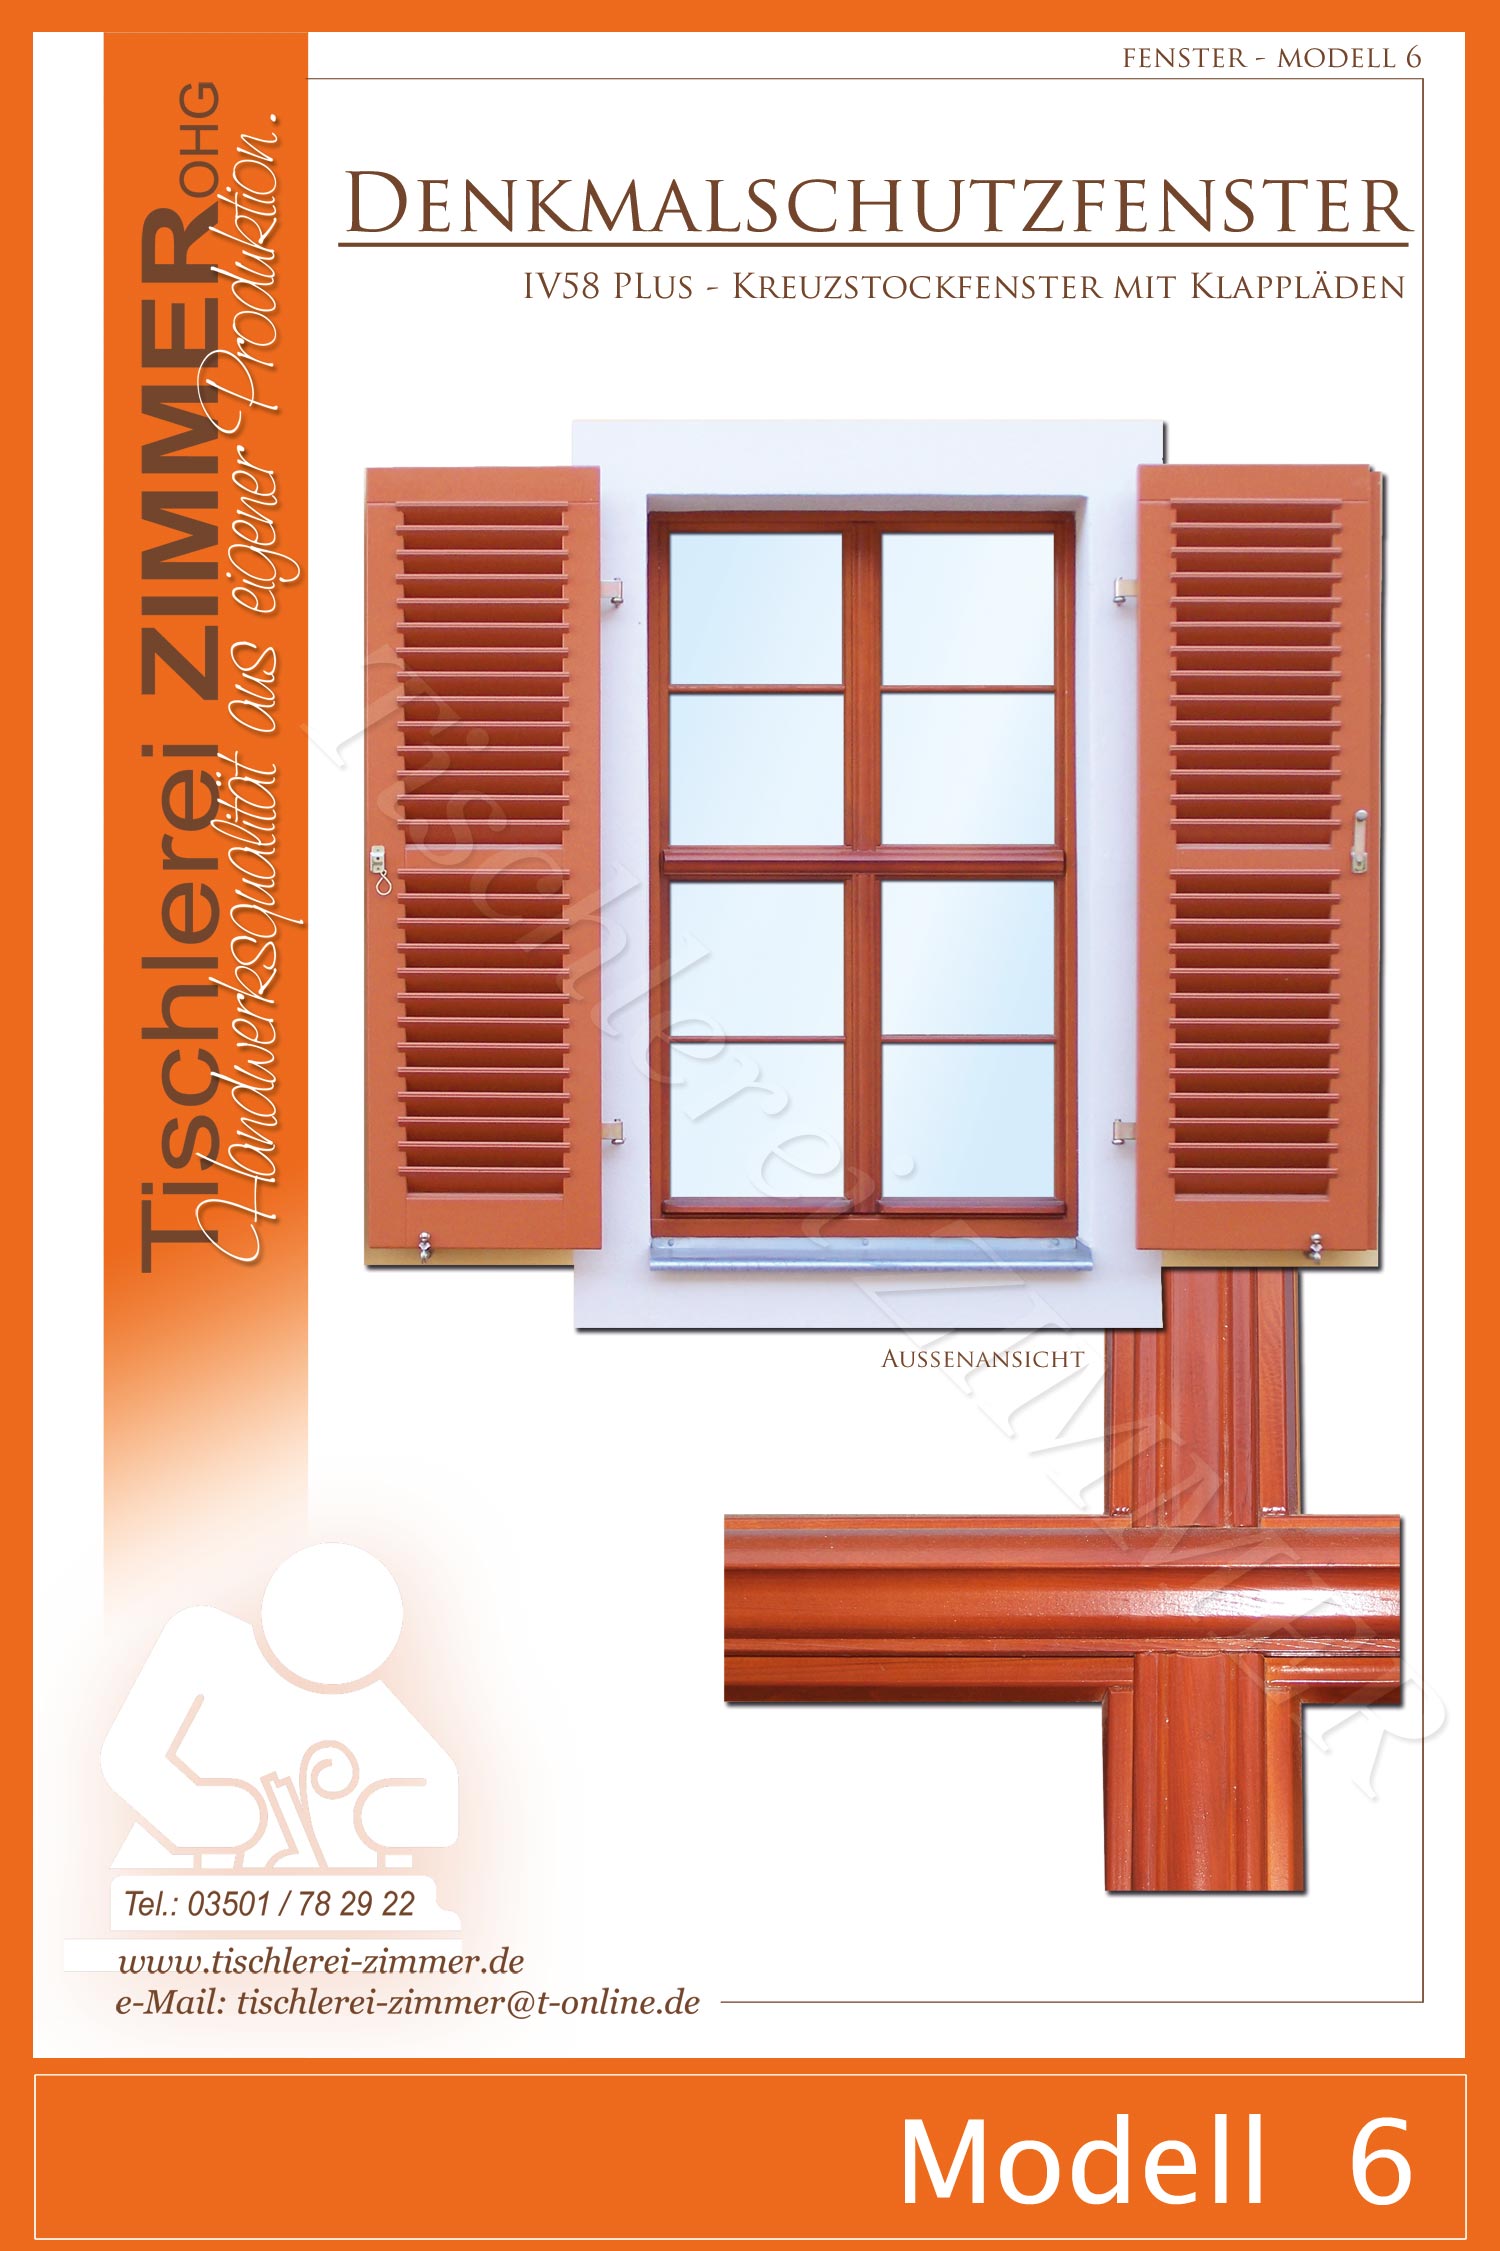 Modell 6 - Kreuzstockfenster mit klassischen Fensterläden